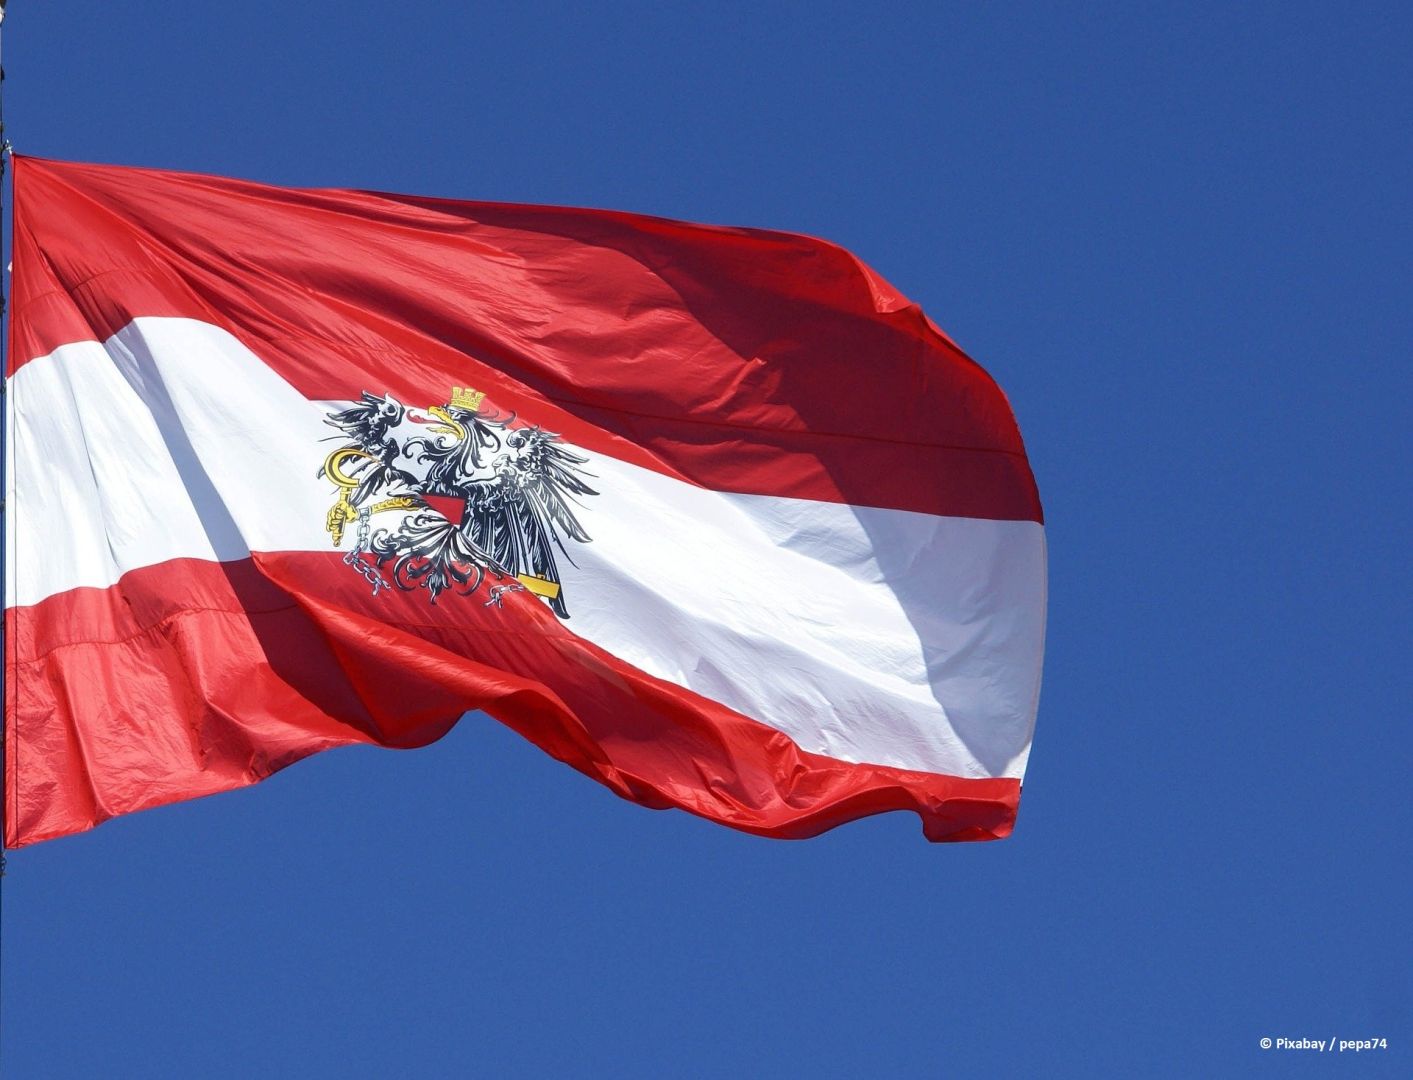 Österreich will EU-Entscheidung zur Anerkennung von Atom und Gas als grüne Energiequellen anfechten